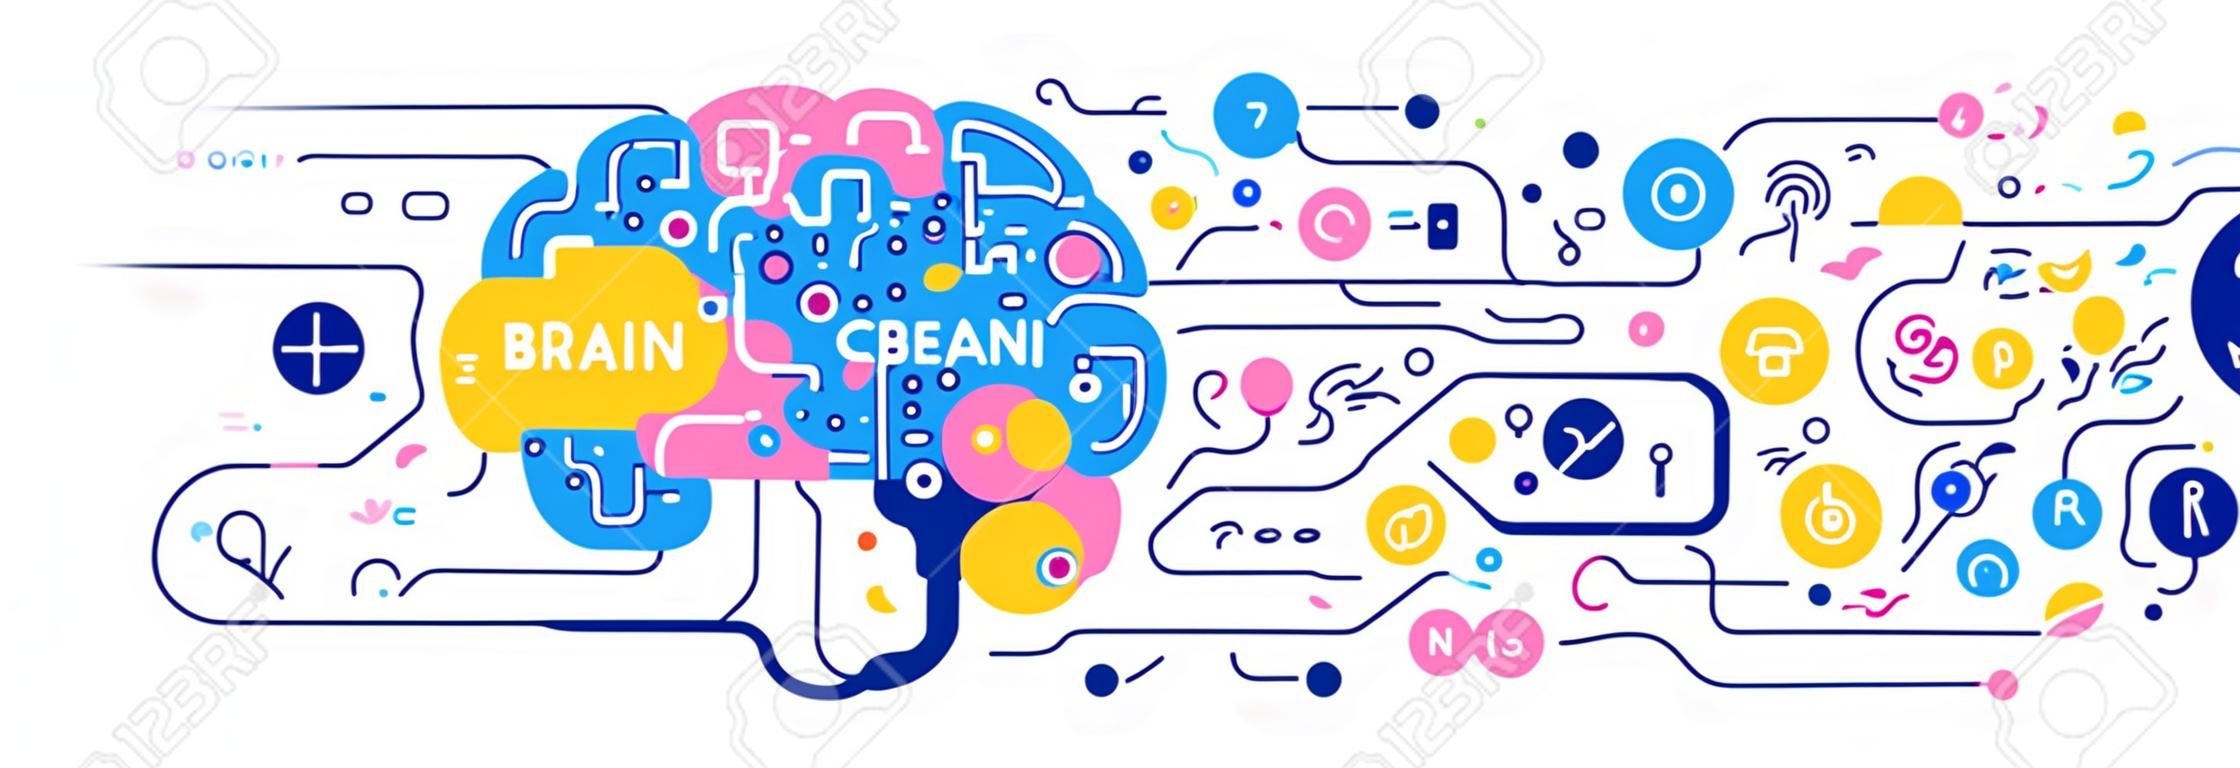 Kreative Vektorgrafik des menschlichen Gehirns mit Symbol und Tag-Wort auf weißem Hintergrund. Linke und rechte Gehirnhälfte kreativ und analytisch. Flache Linie Kunststil Gehirndesign für Bildungsbanner, Druck